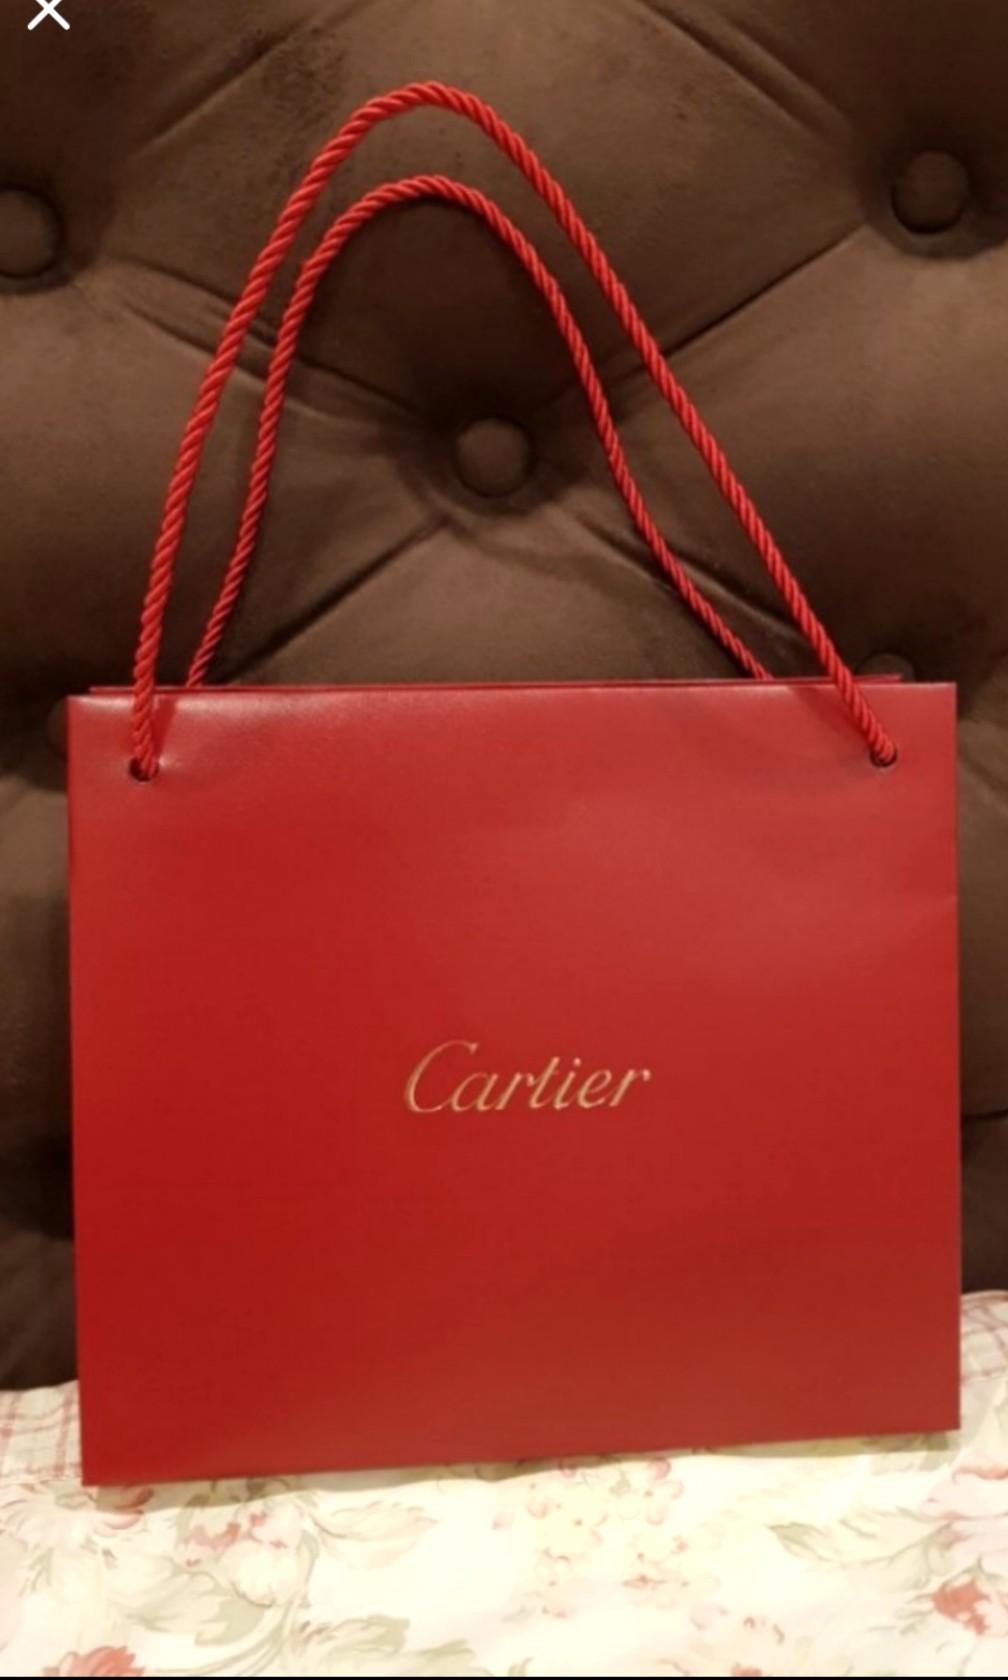 cartier carrier bag